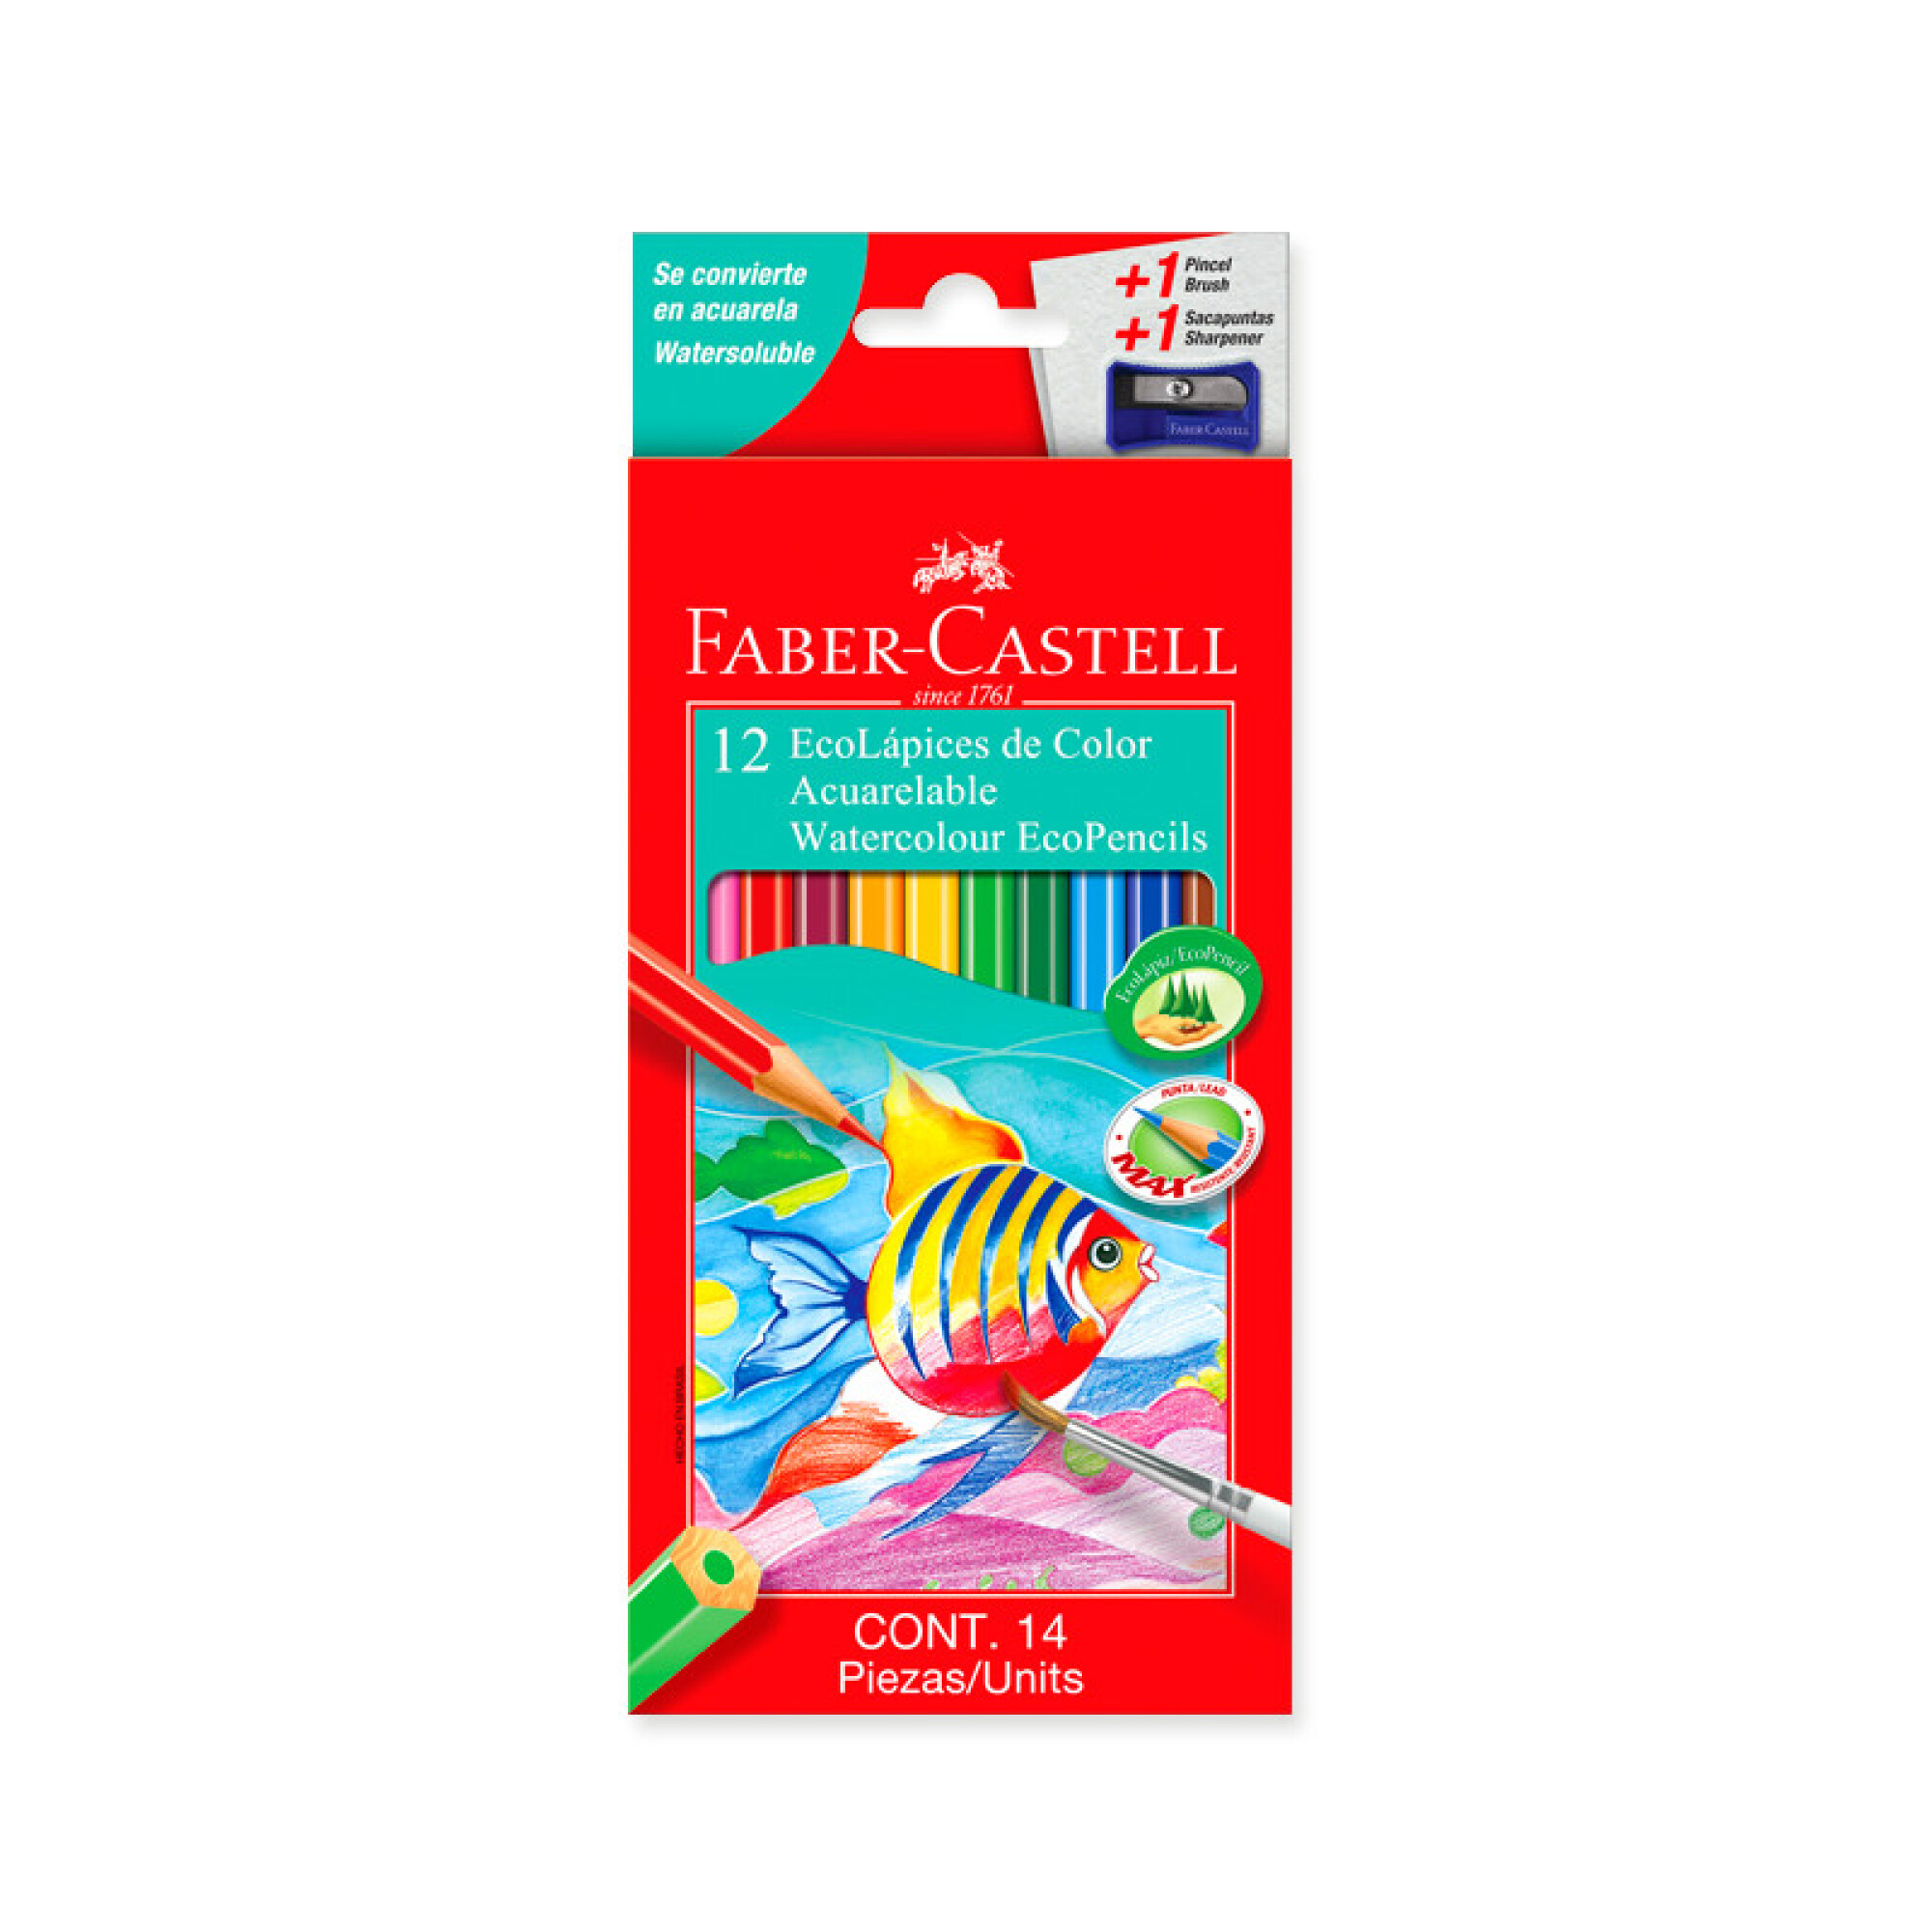 7 Beneficios de los Lapices Acuarelables Faber Castell para Mejorar tu Arte  - Encuentra los mejores productos para tu hogar en parislibreria